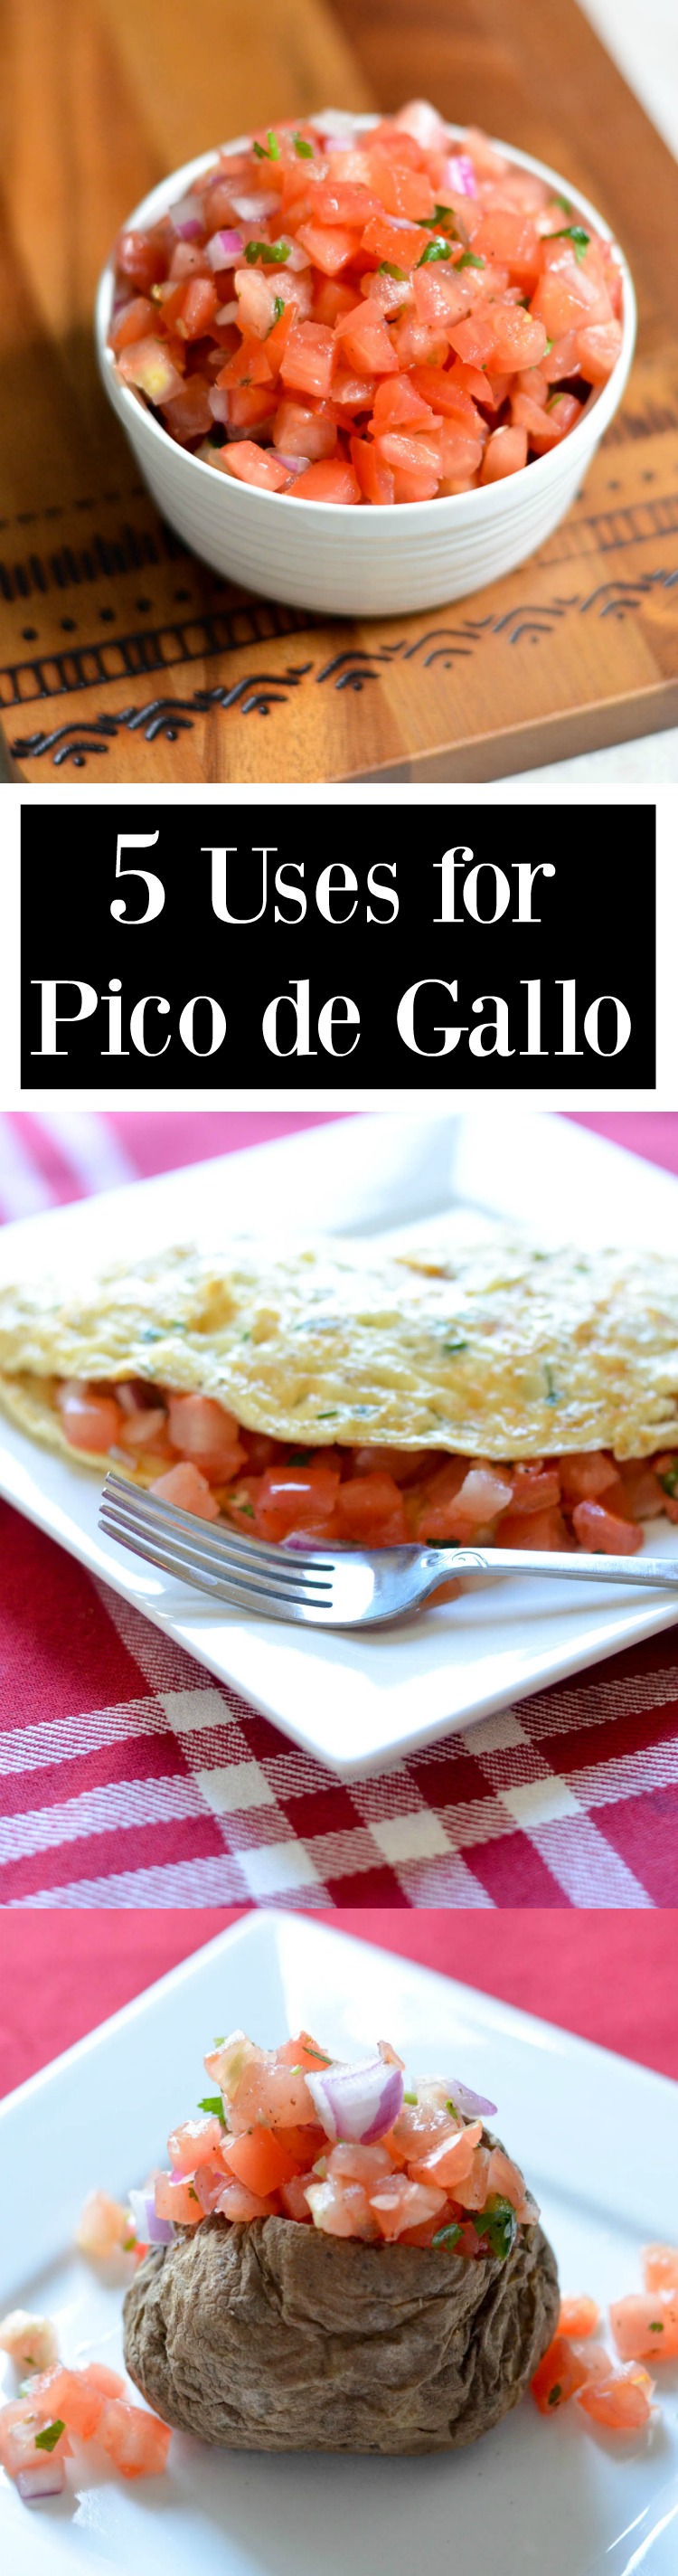 5 Uses for Pico de Gallo- delicious recipe ideas!